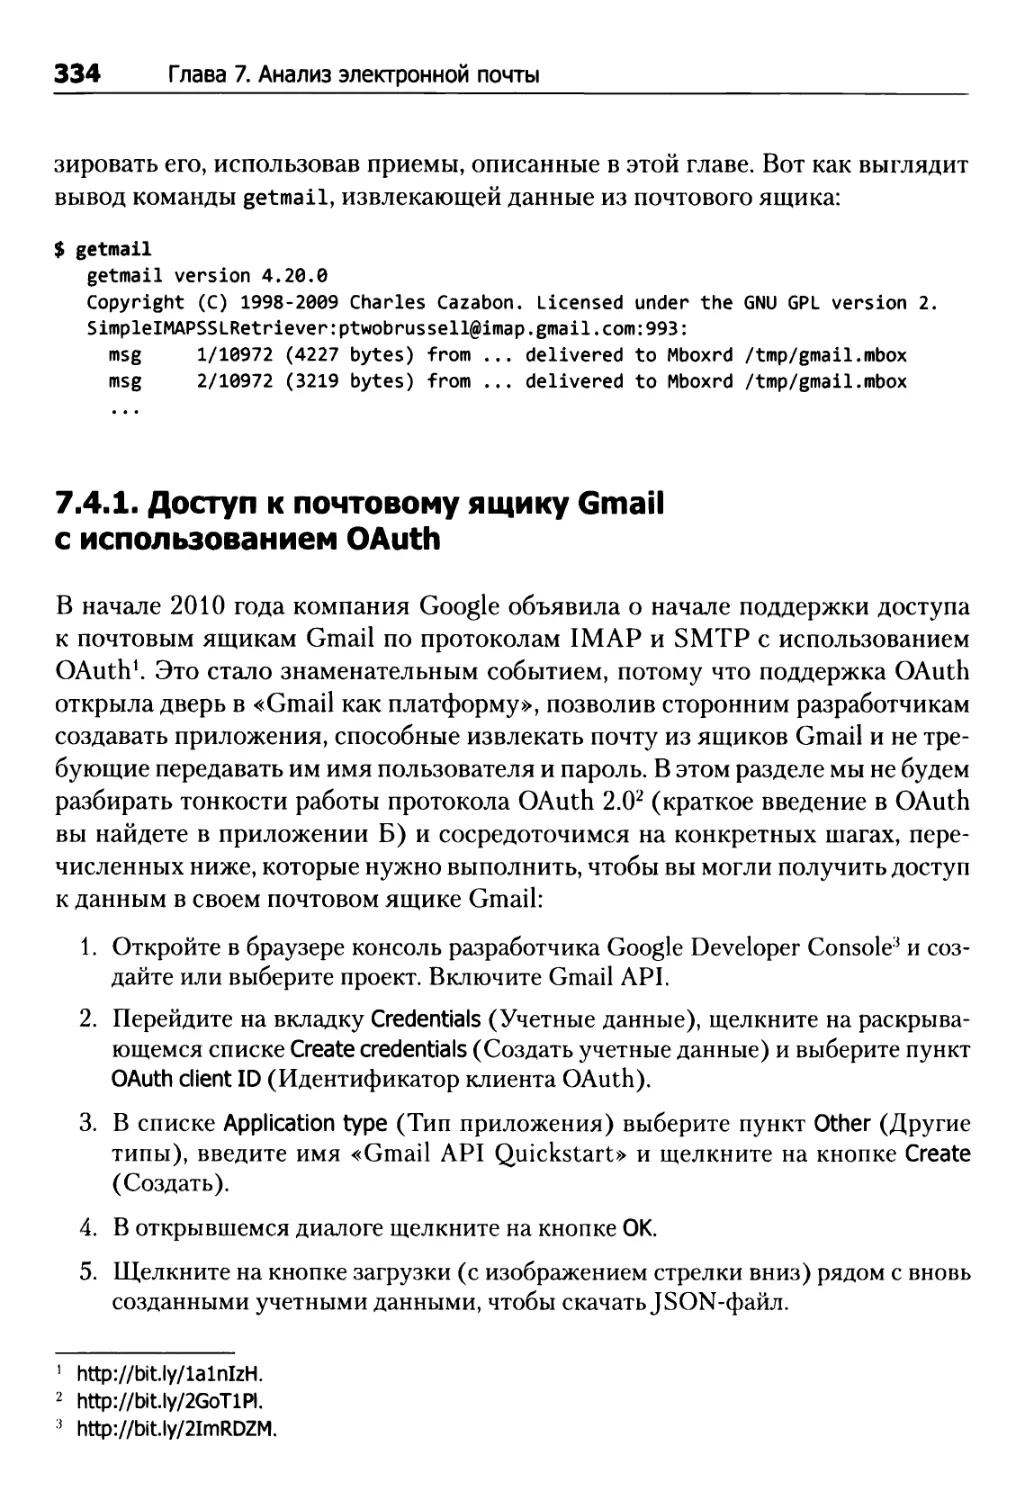 7.4.1. Доступ к почтовому ящику Gmail с использованием OAuth